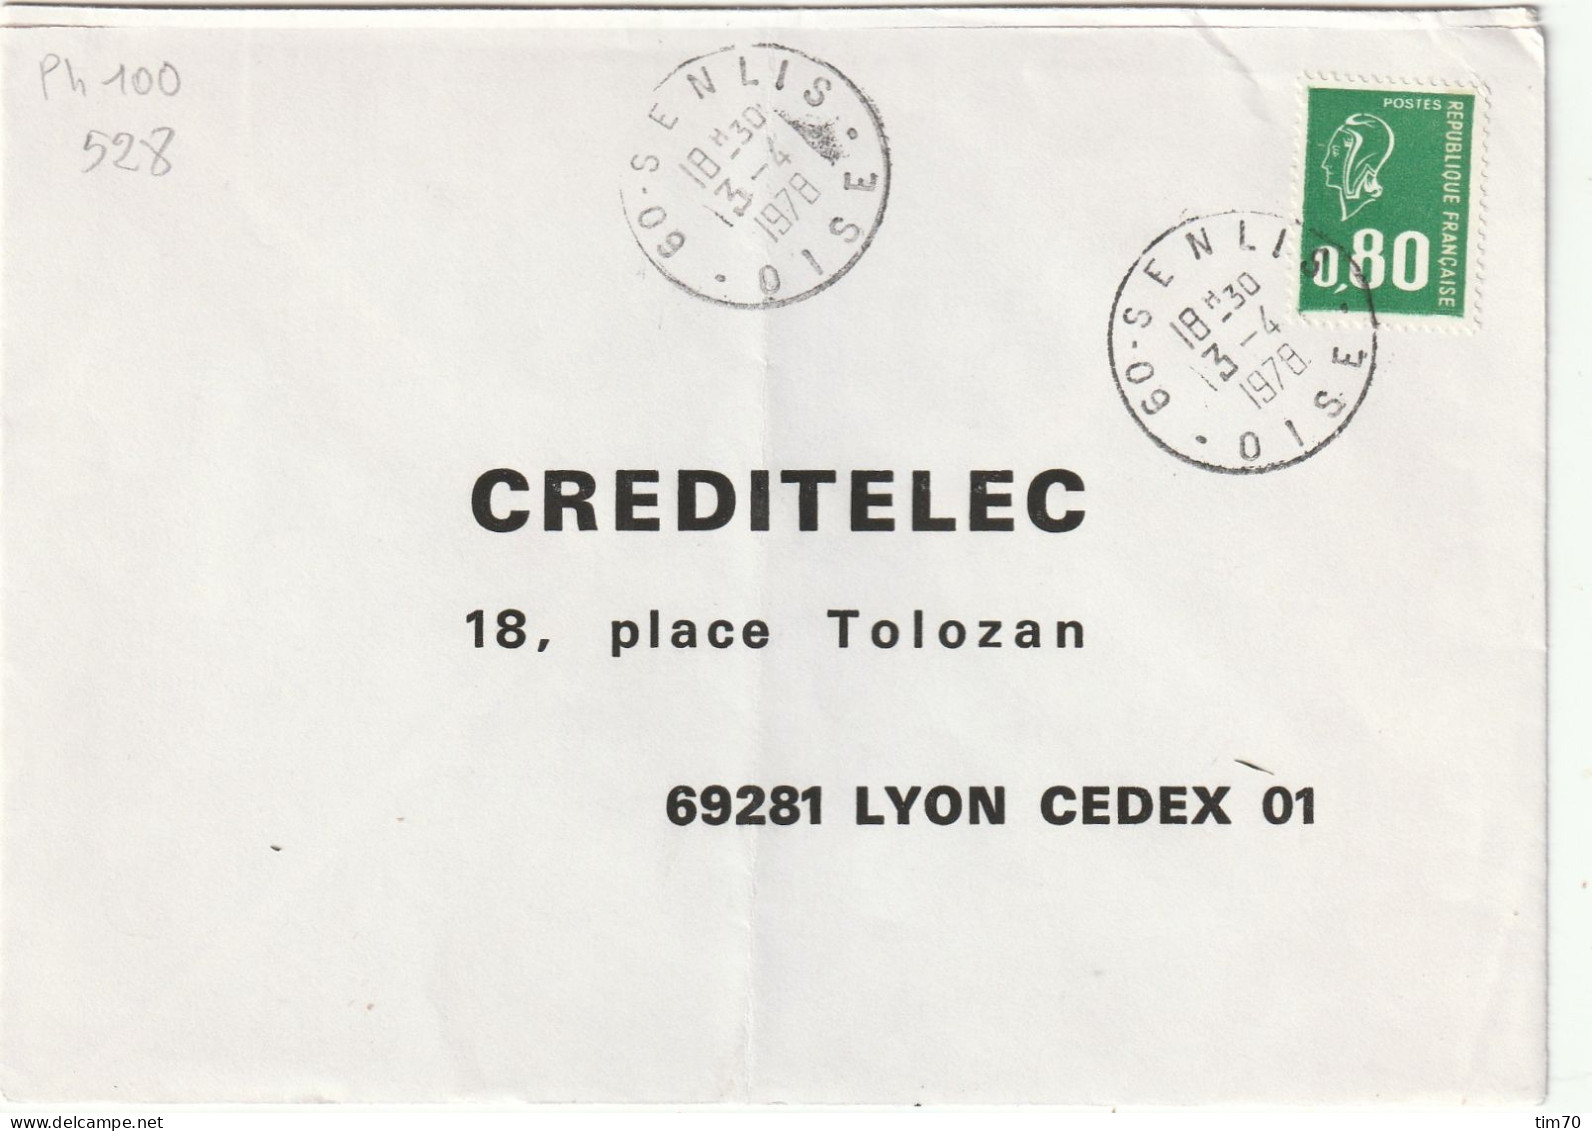 CAD  / N° 1891  60 - SENLIS -  OISE - Manual Postmarks